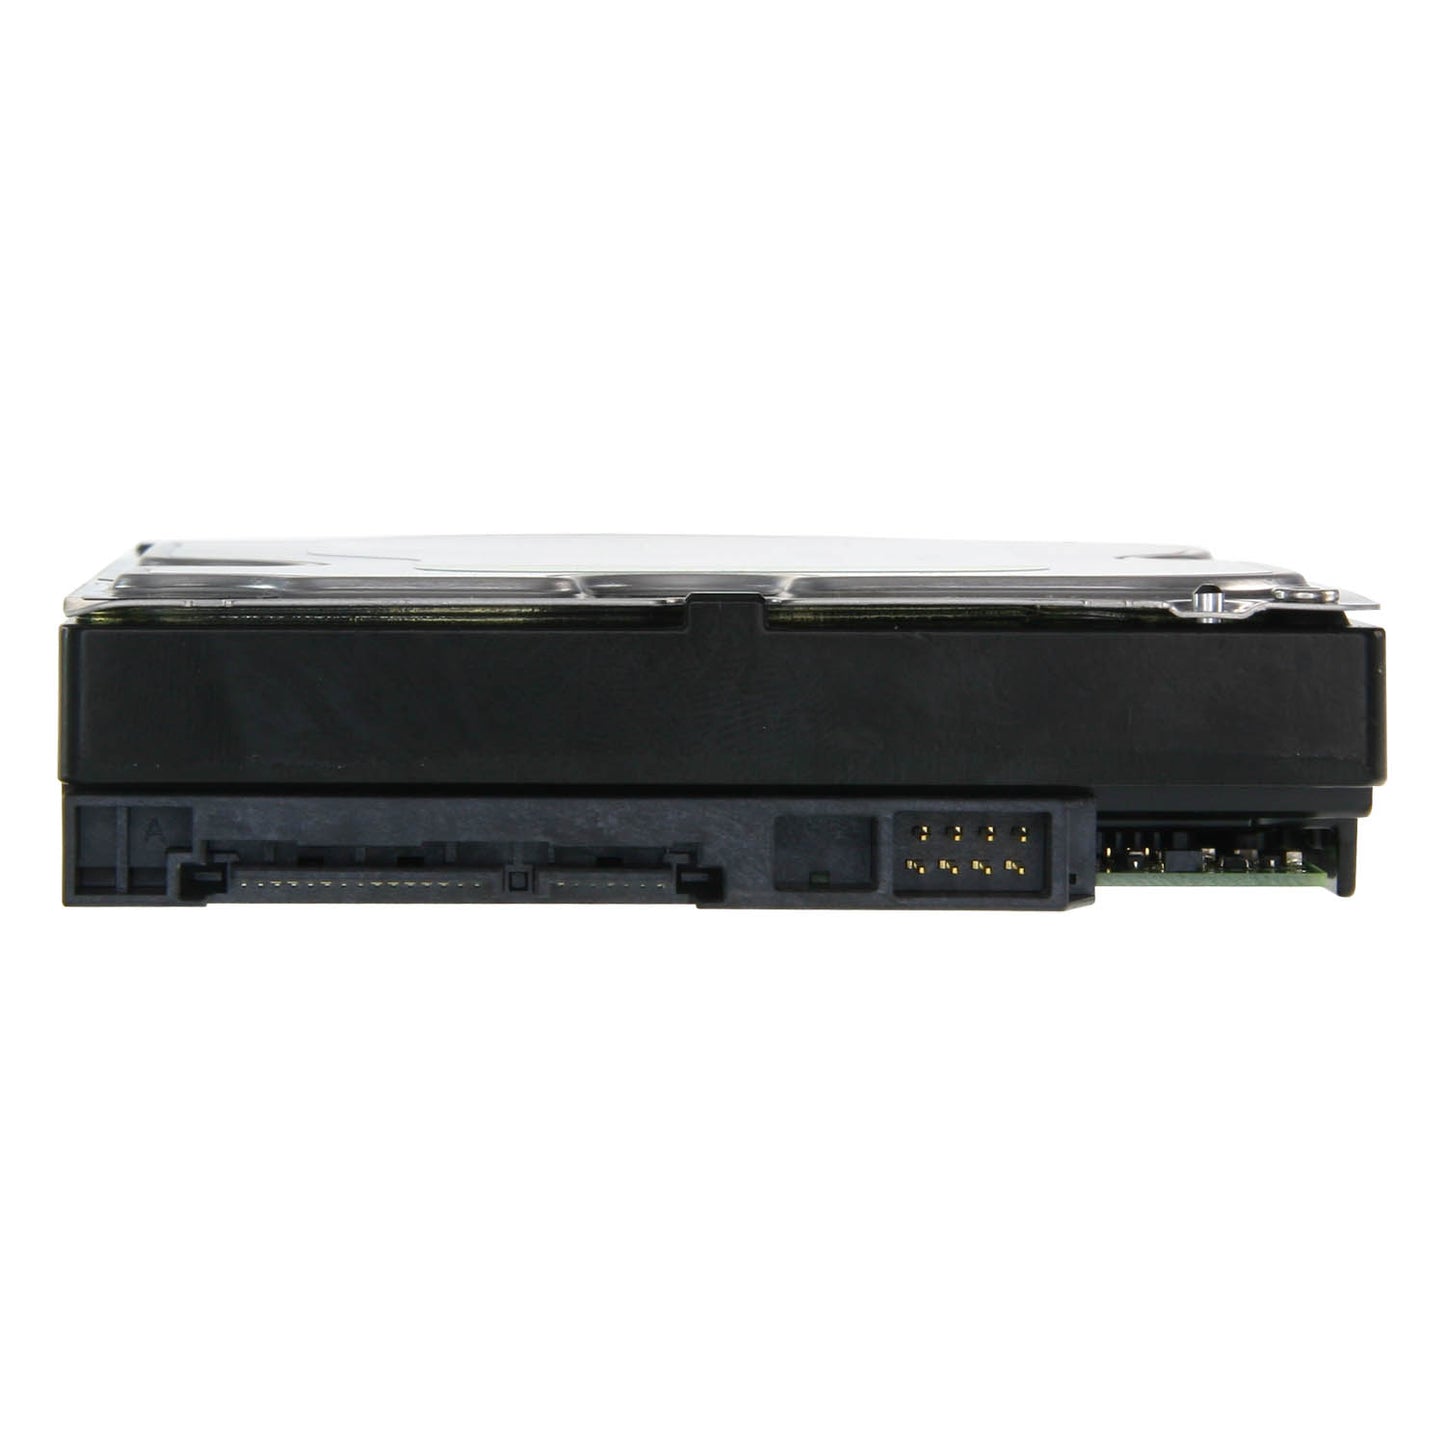 Disco Duro - 1 TB de capacidad - Interfaz SATA 6 GB/s - Modelo WD10PURX - Especial para videograbadores - Solo o instalado en DVR